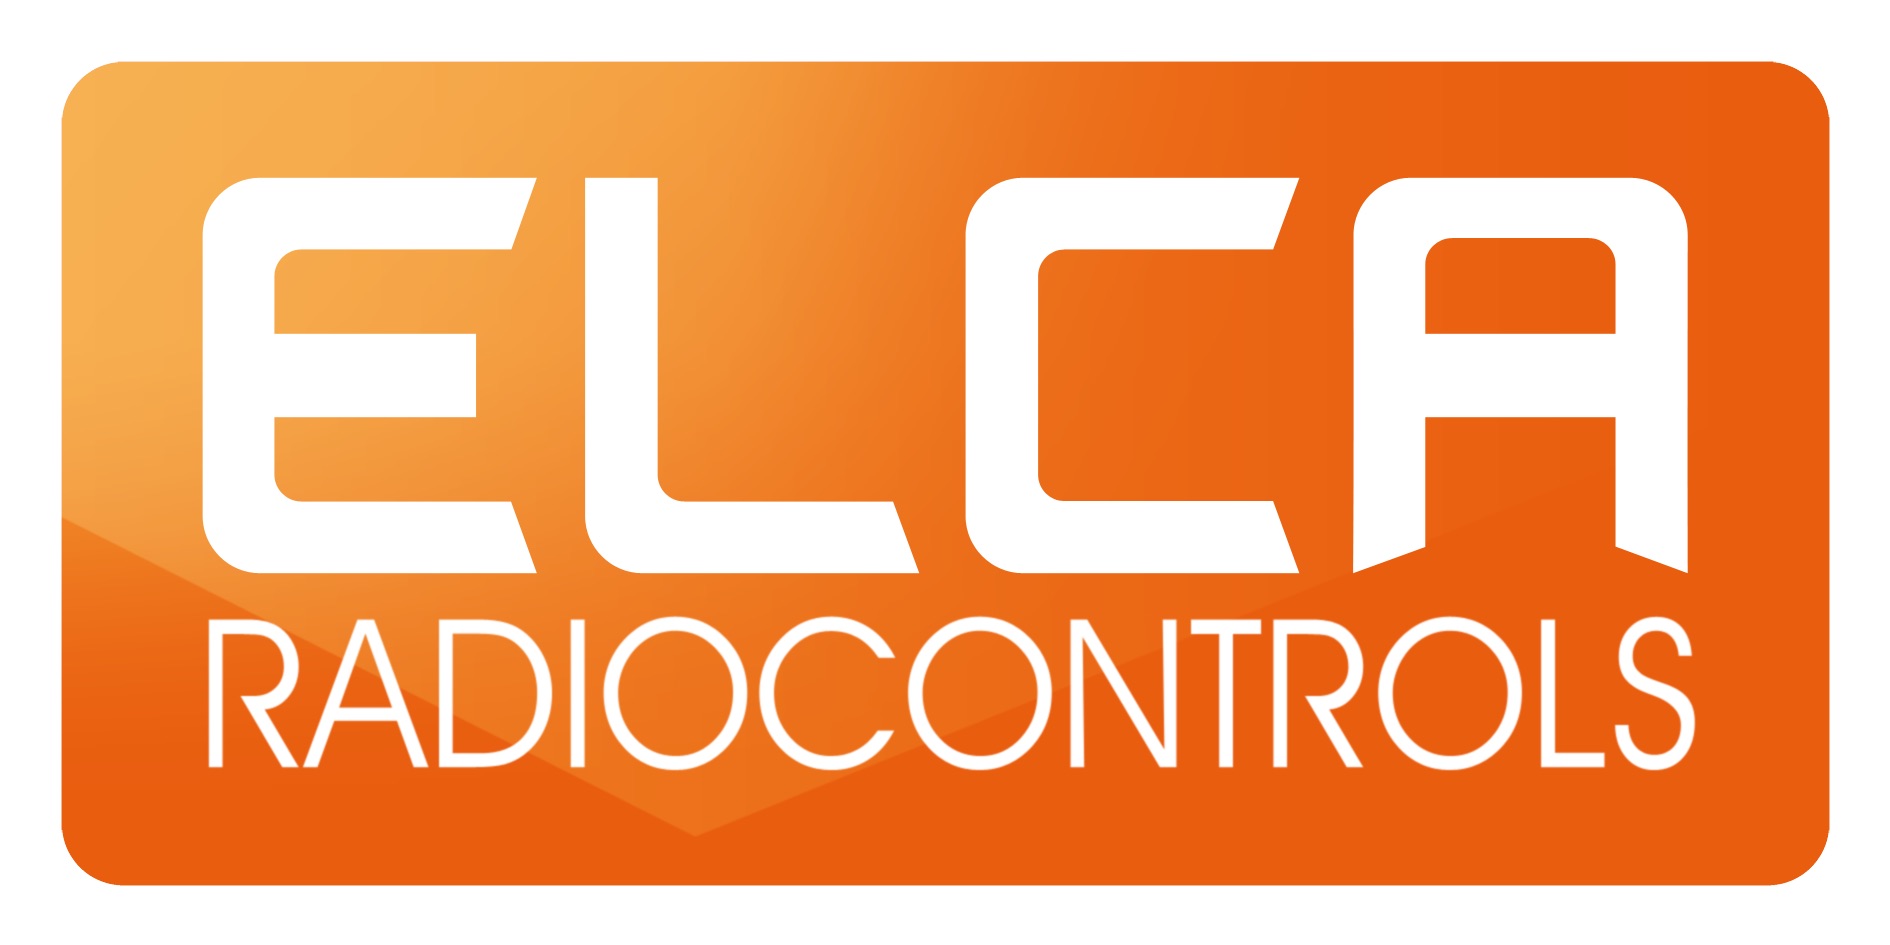 Elca Radiocontrols Srl